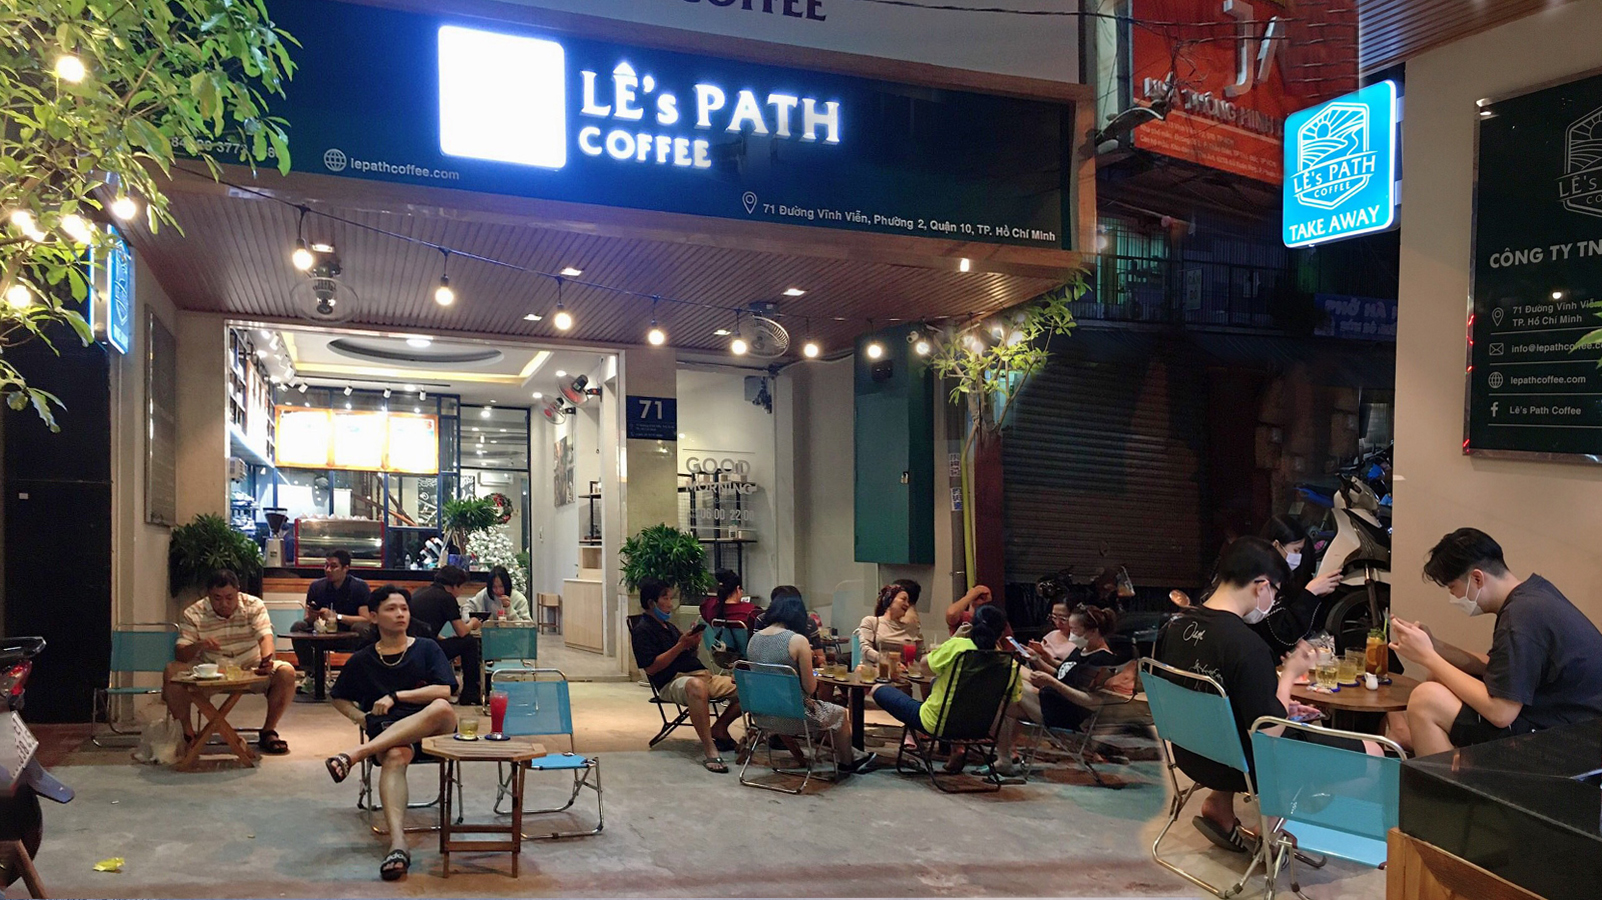 Lê's Path Coffee 71 Vĩnh Viễn